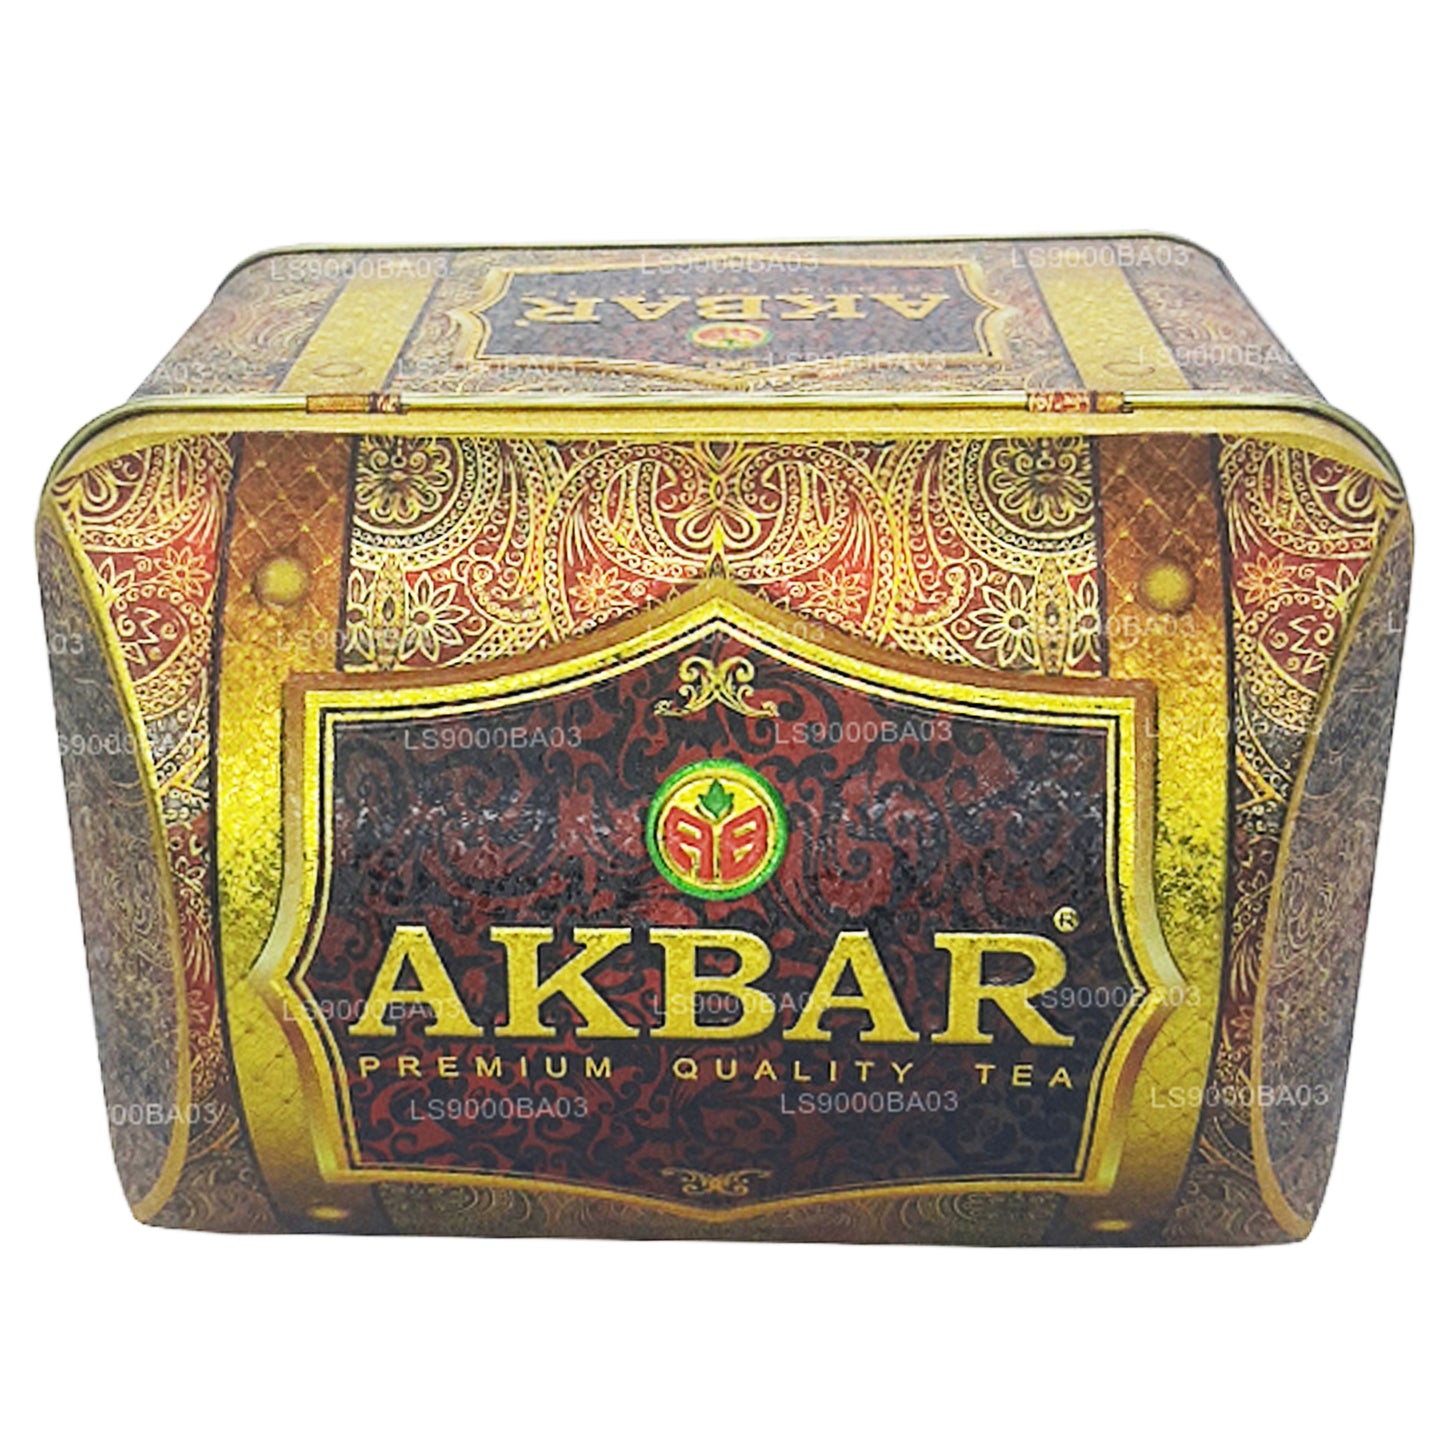 Boîte au trésor Akbar Exclusive Collection à la fraise (250 g)